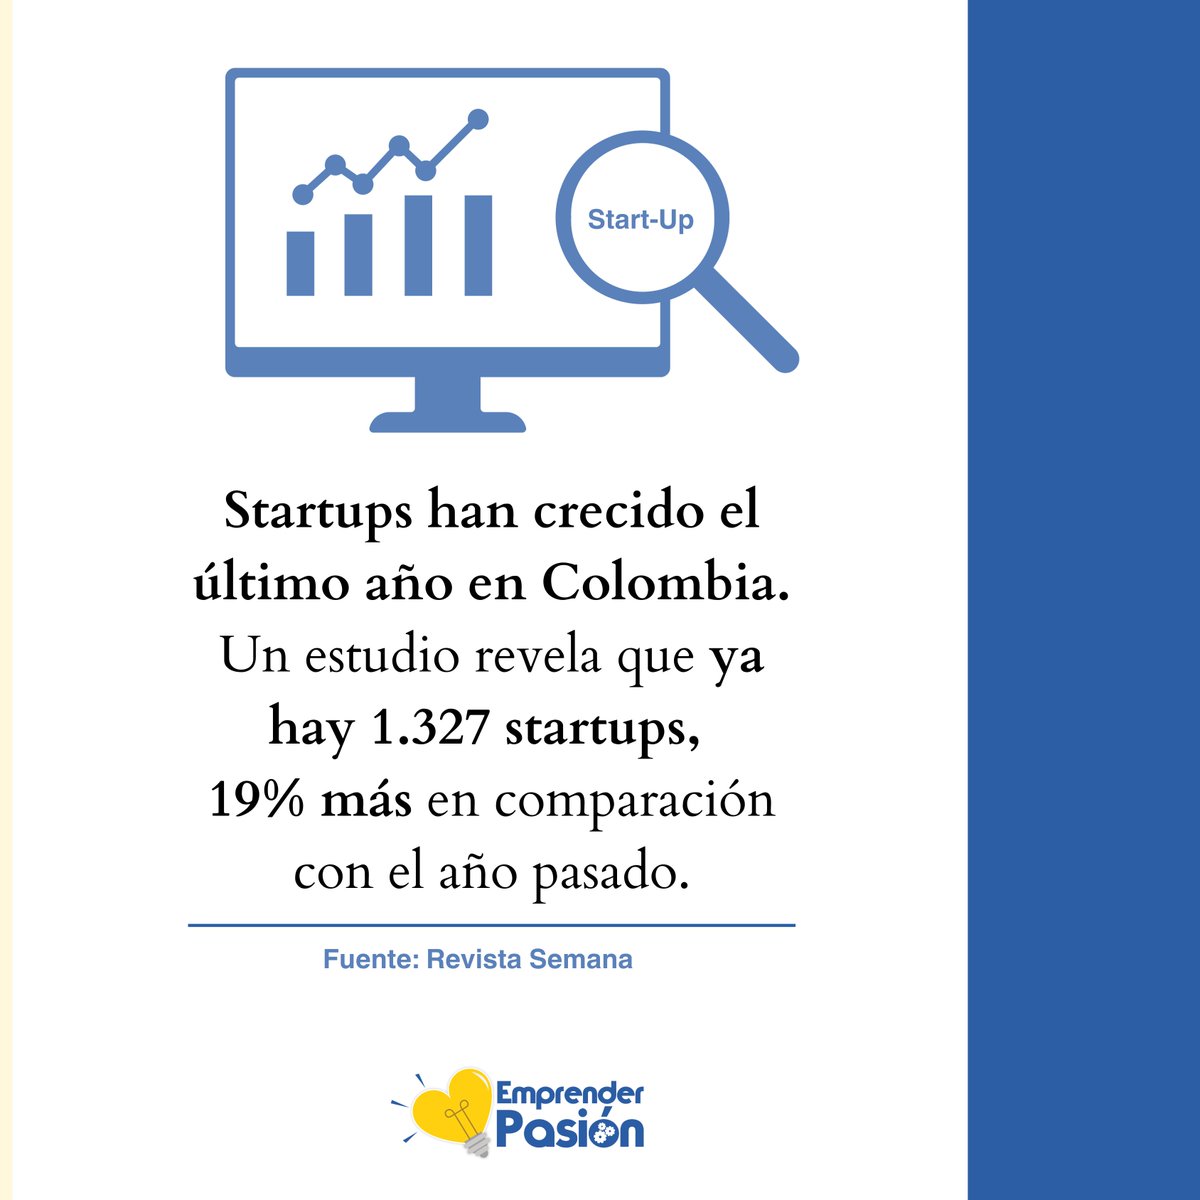 ¡Emprender con pasión! 🚀

#emprendimiento #EmprenderPasión #EmprenderEsClave #startups #Colombia